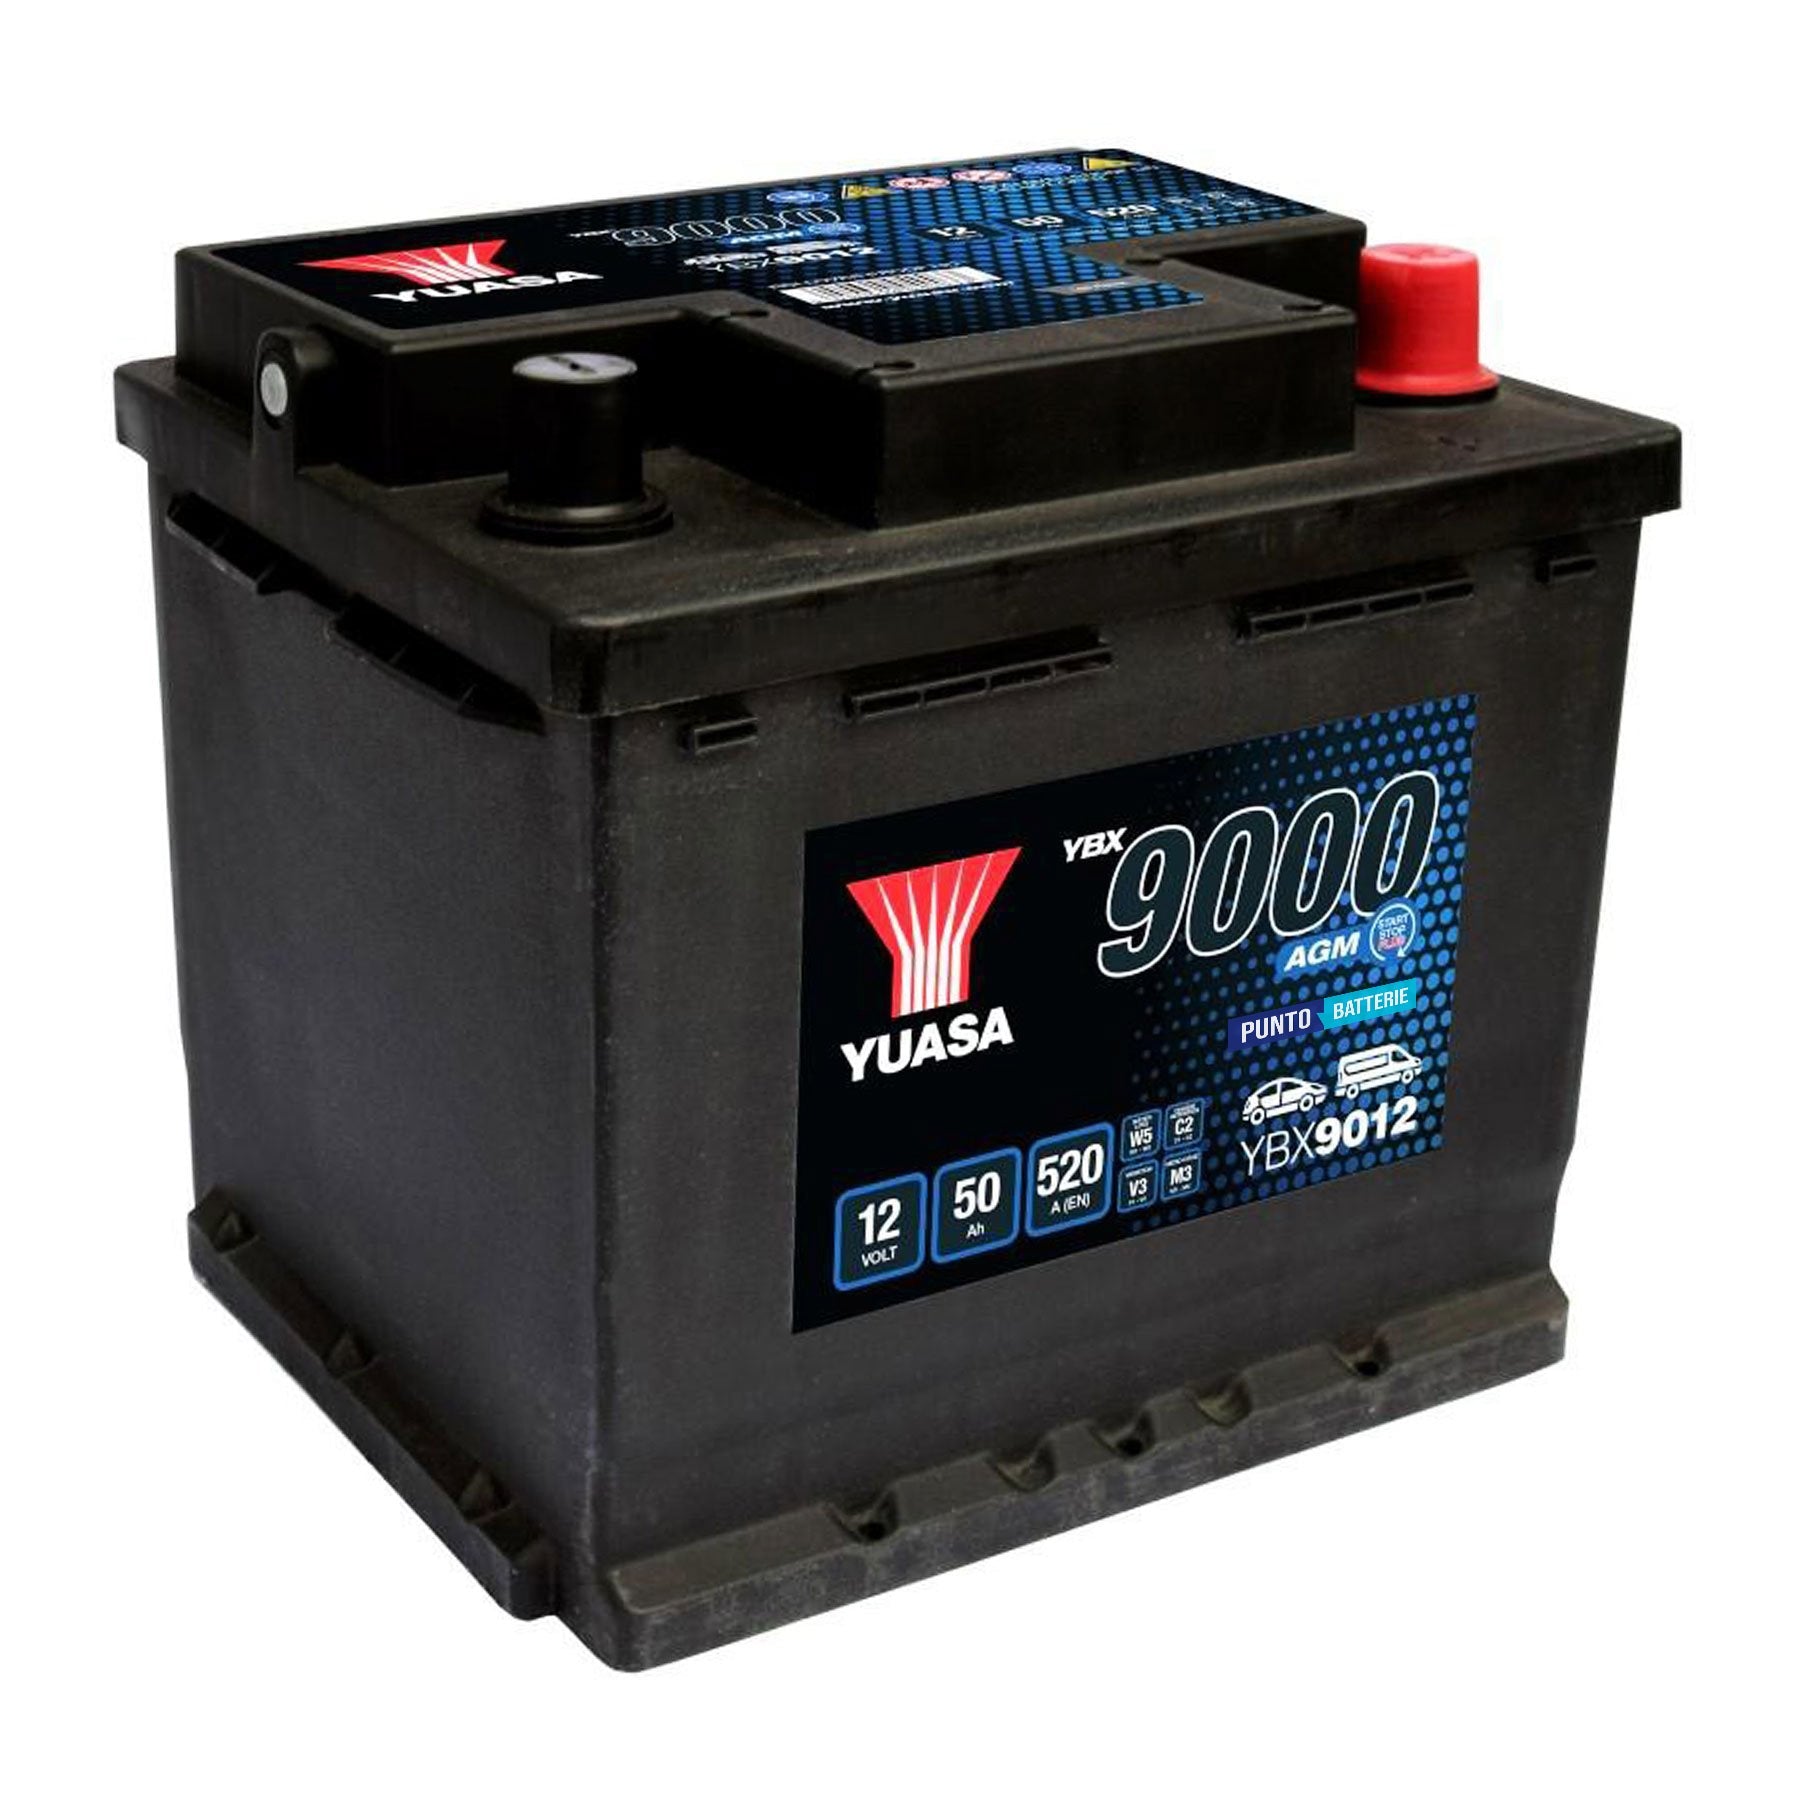 Batteria originale Yuasa YBX9000 YBX9012, dimensioni 207 x 175 x 190, polo positivo a destra, 12 volt, 50 amperora, 520 ampere, AGM. Batteria per auto e veicoli leggeri con start e stop.